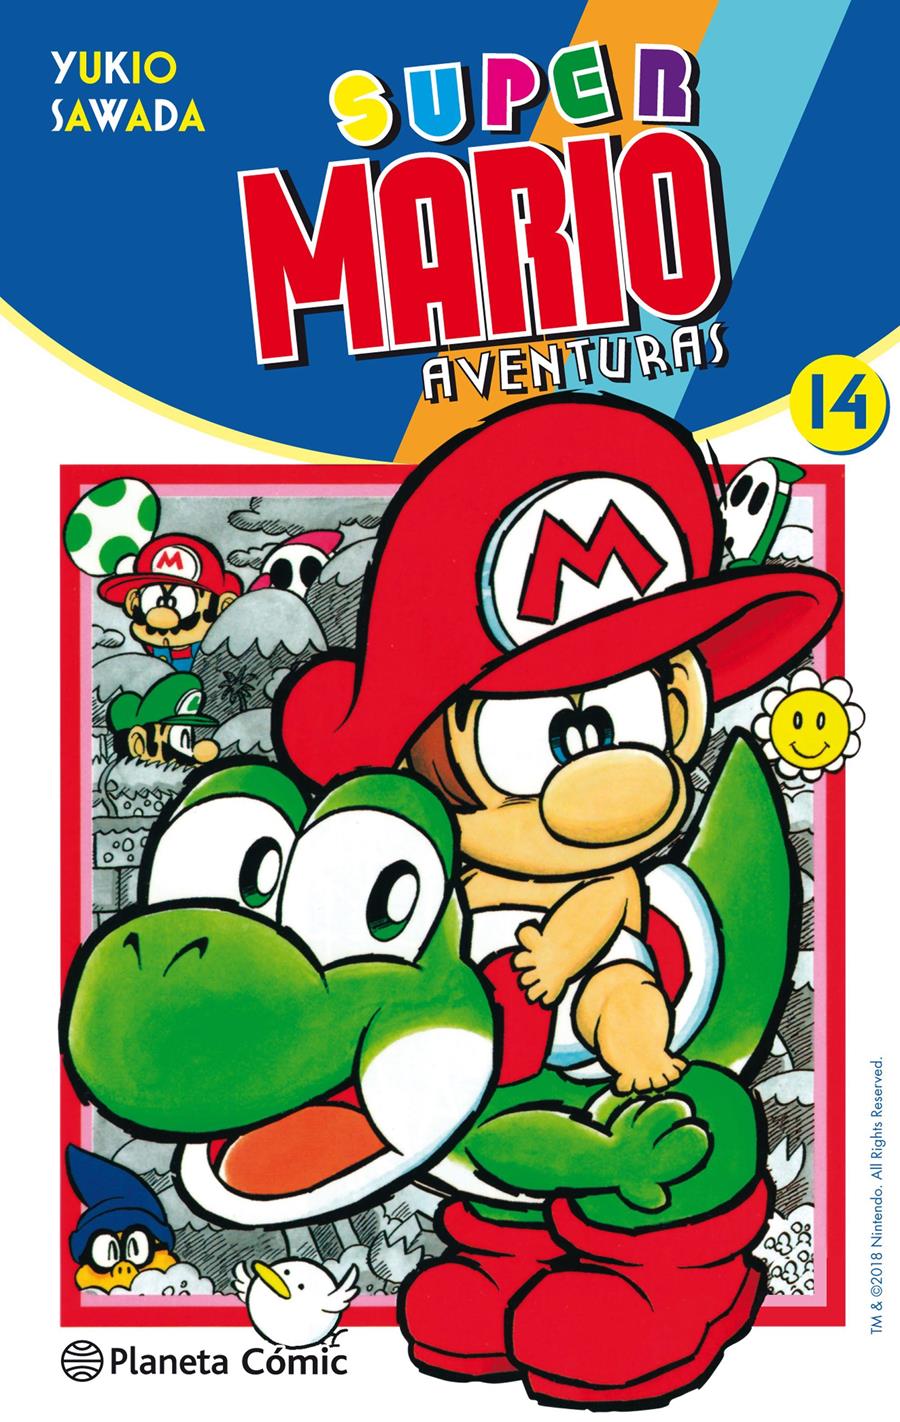 Super Mario nº 14 | N0918-PLA31 | Yukio Sawada | Terra de Còmic - Tu tienda de cómics online especializada en cómics, manga y merchandising